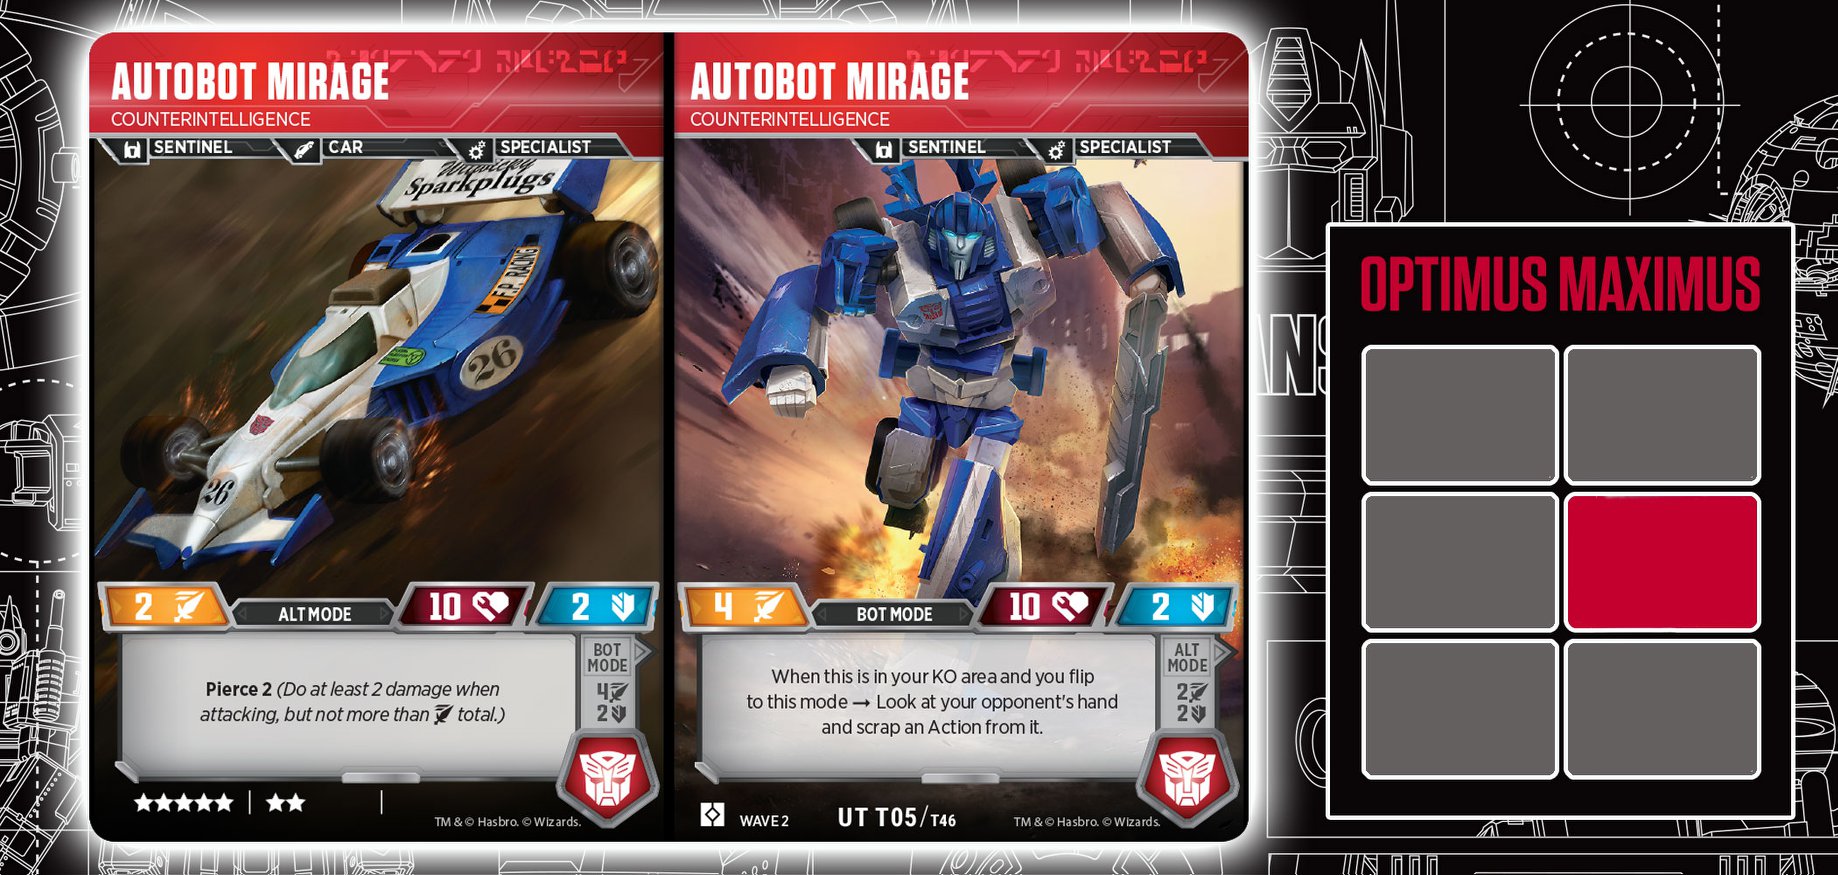 Autobot Mirage, Counterintelligence